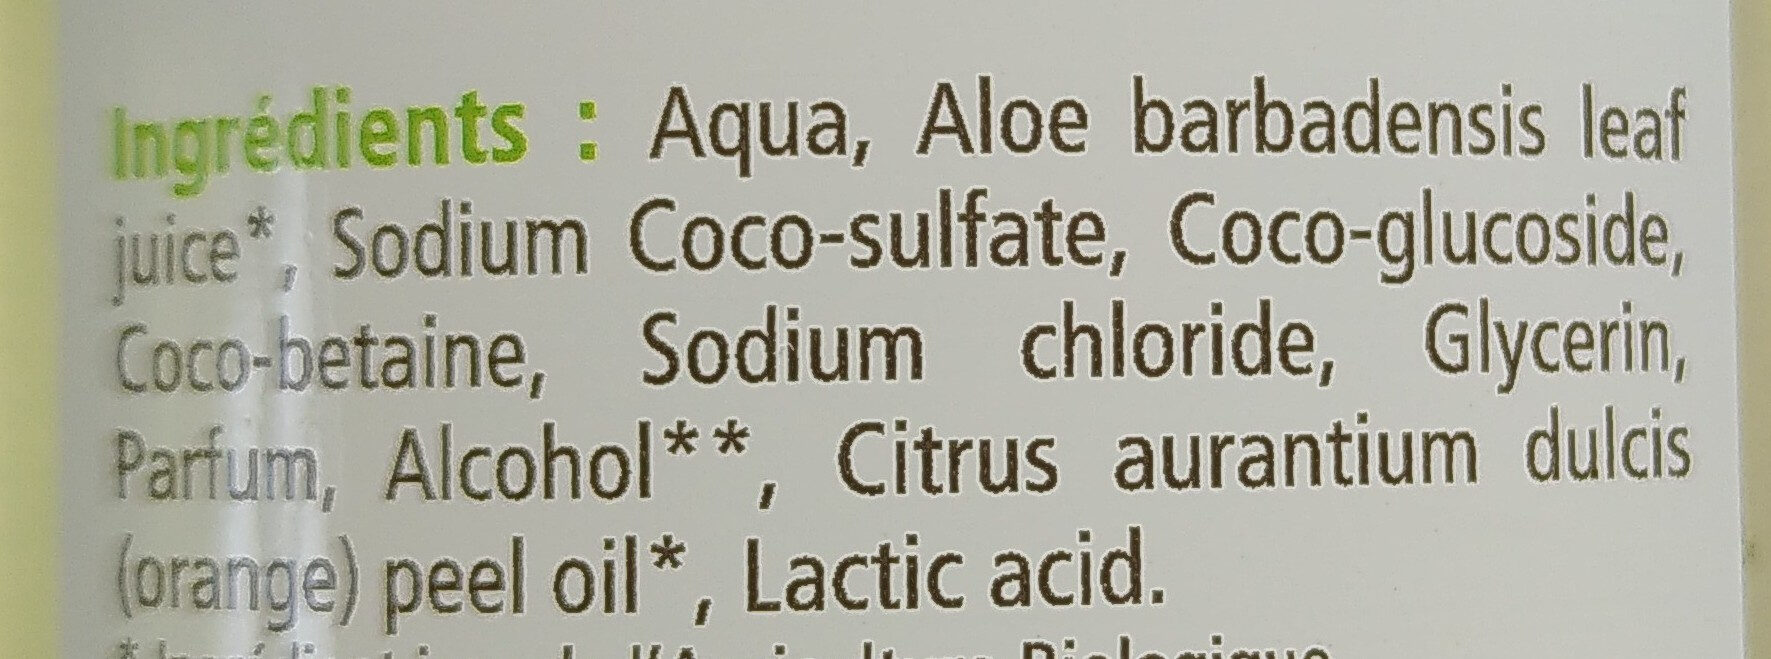 Shampooing gel douche Aloe vera - Ingredients - fr